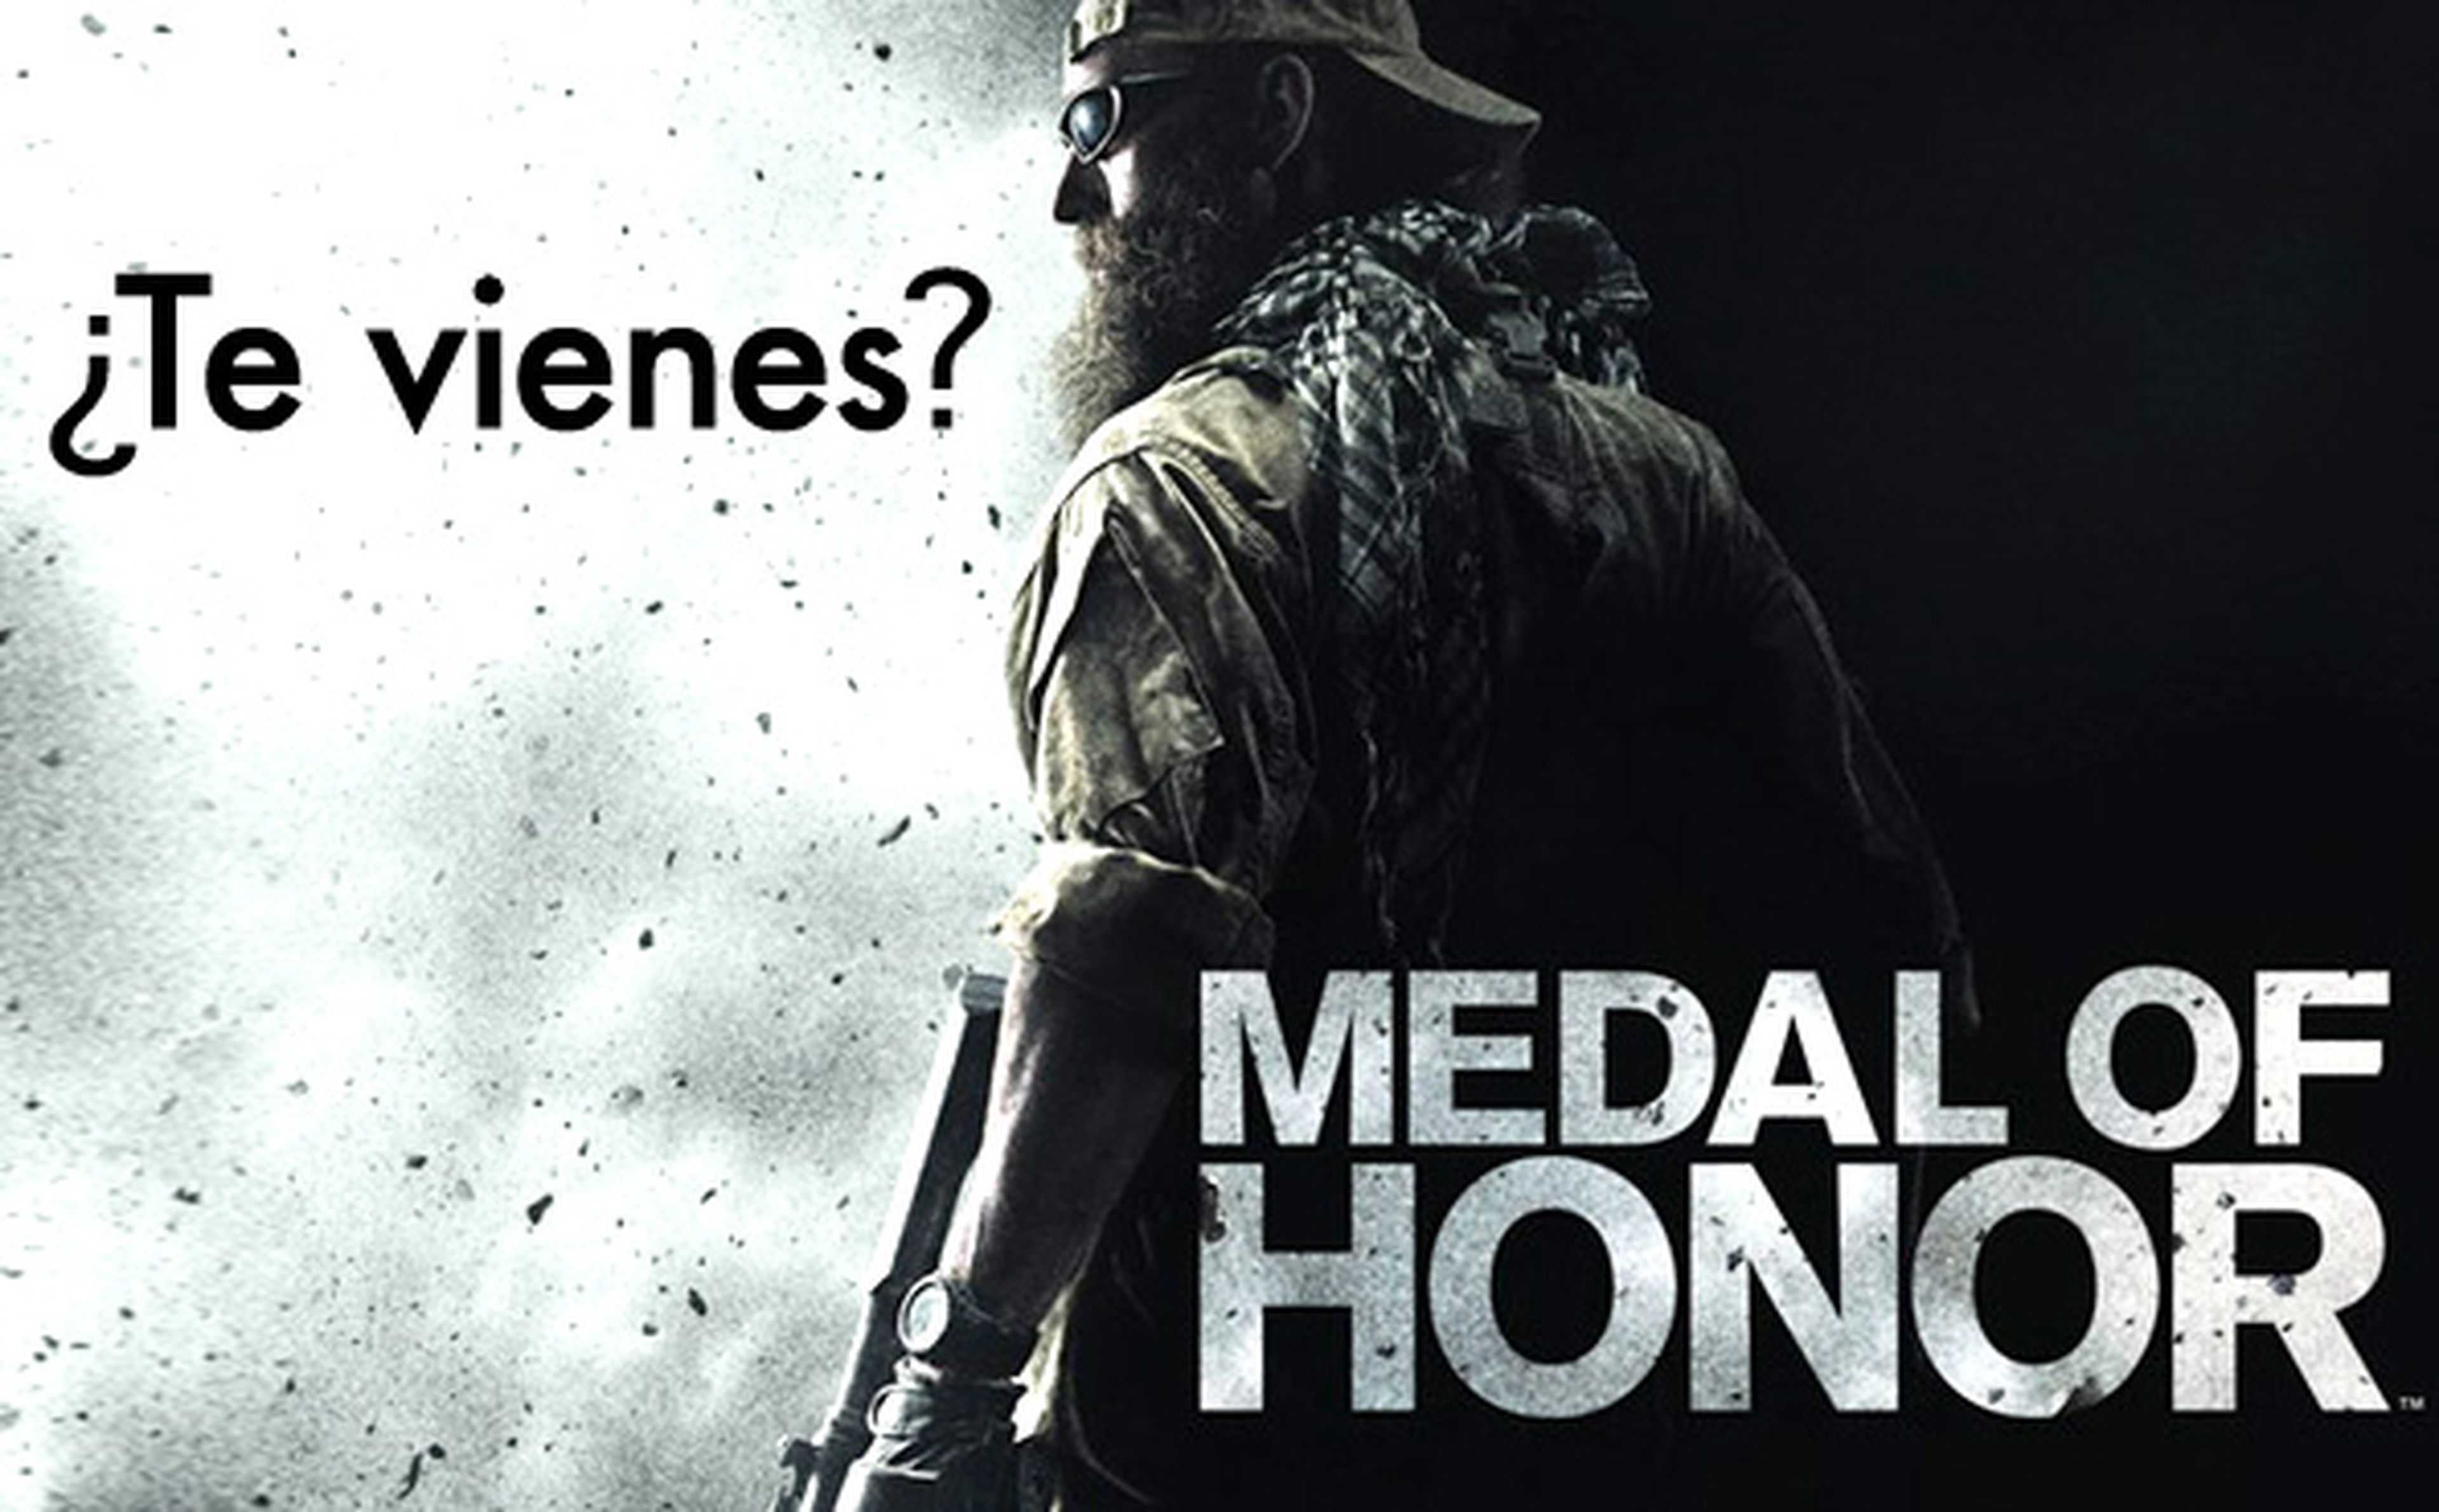 ¿Te apuntas al día Medal of Honor?